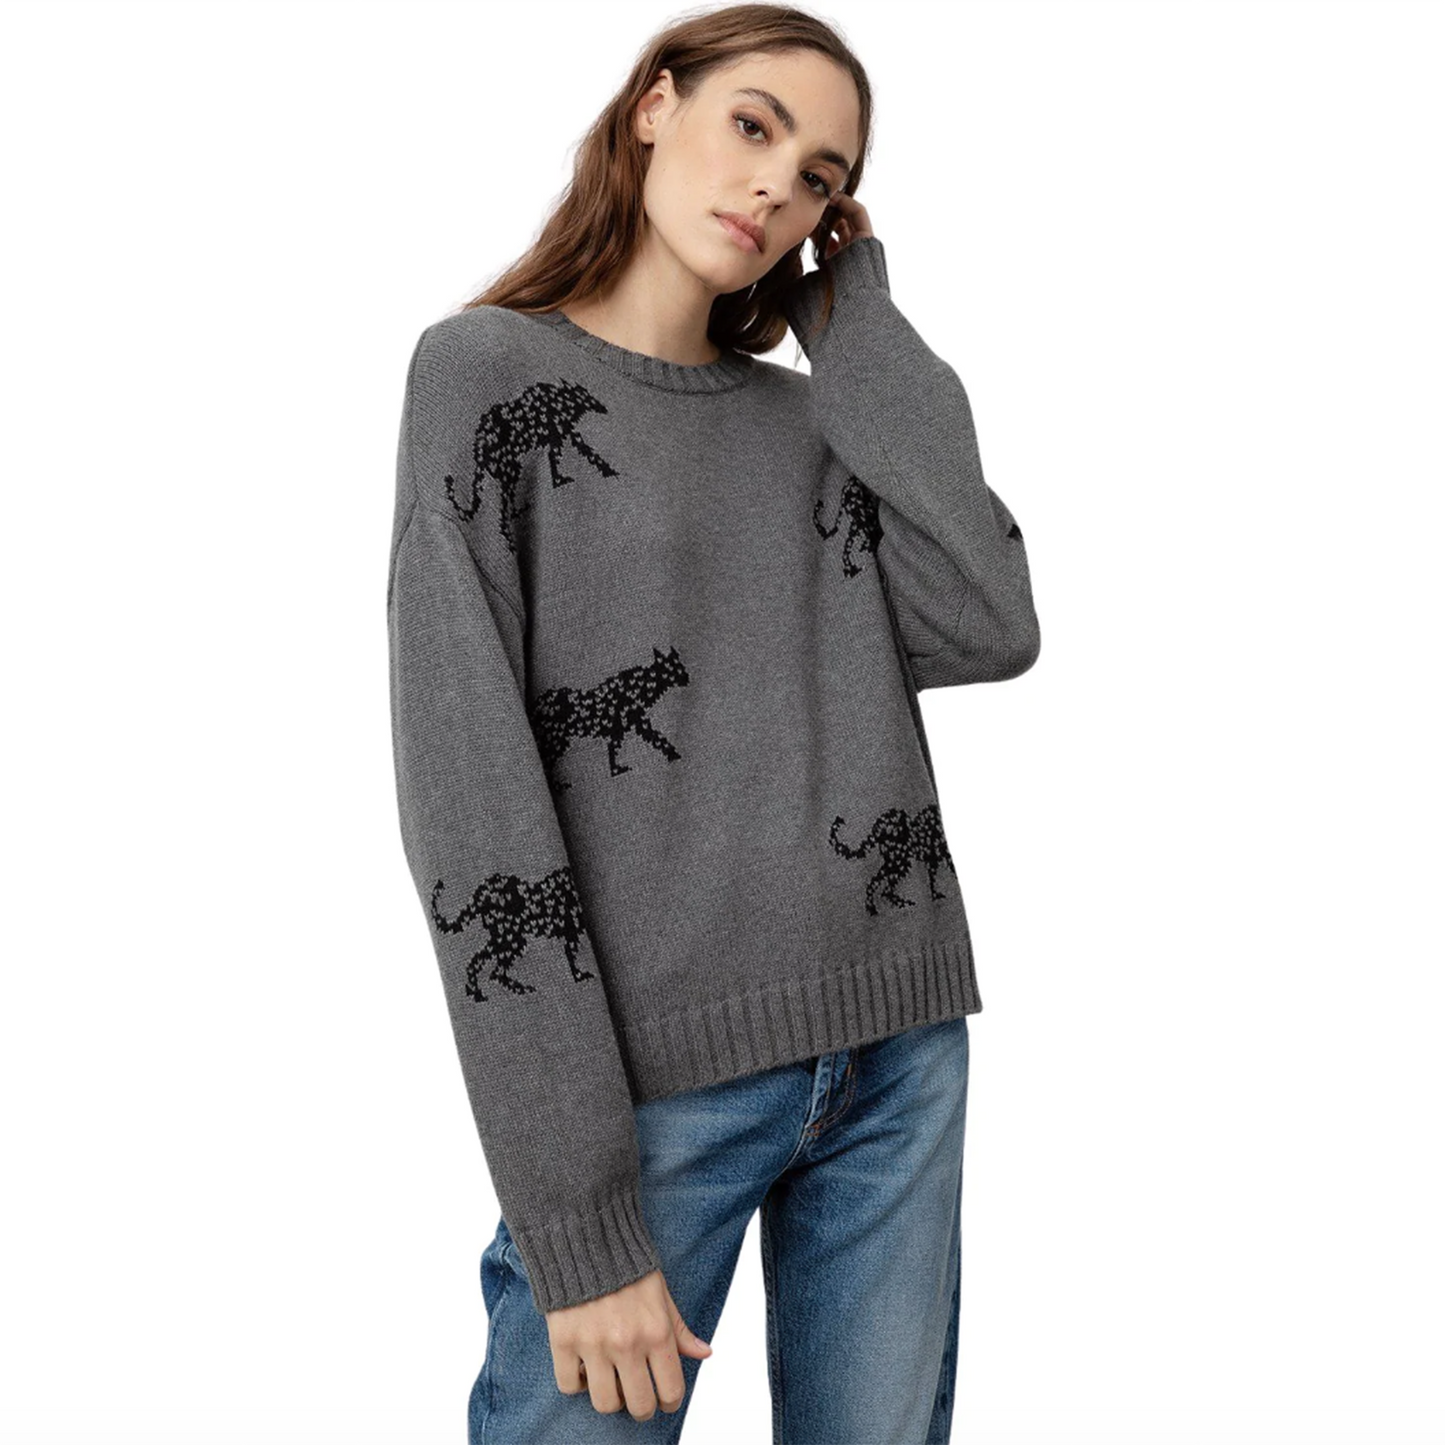 rails perci cotton-cashmere jungle cat sweater - size small